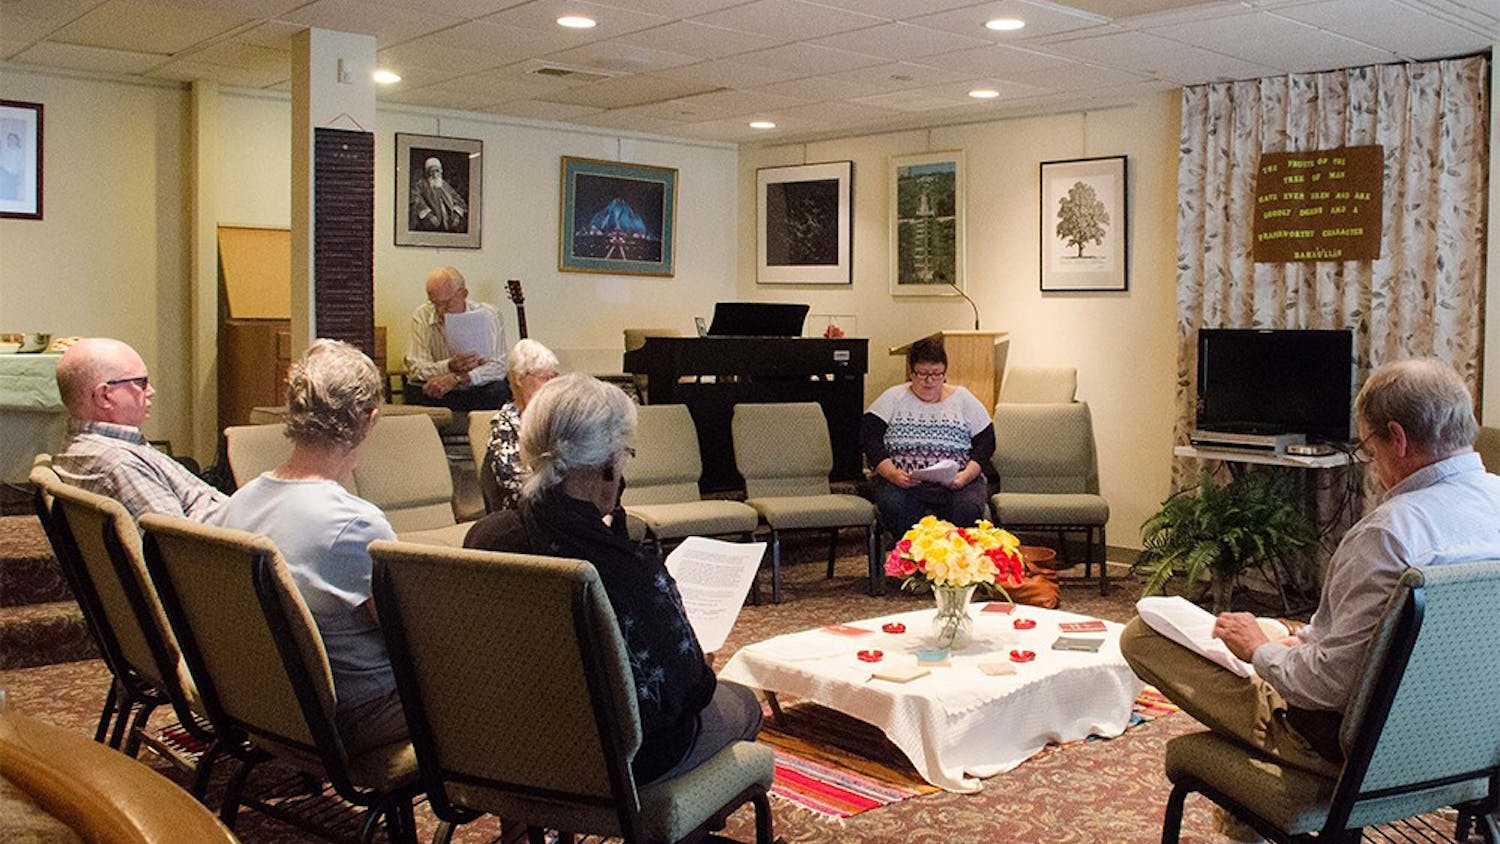 Members of the Bahá’í Faith community of Bloomington read passages during an interfaith devotional time Sunday.